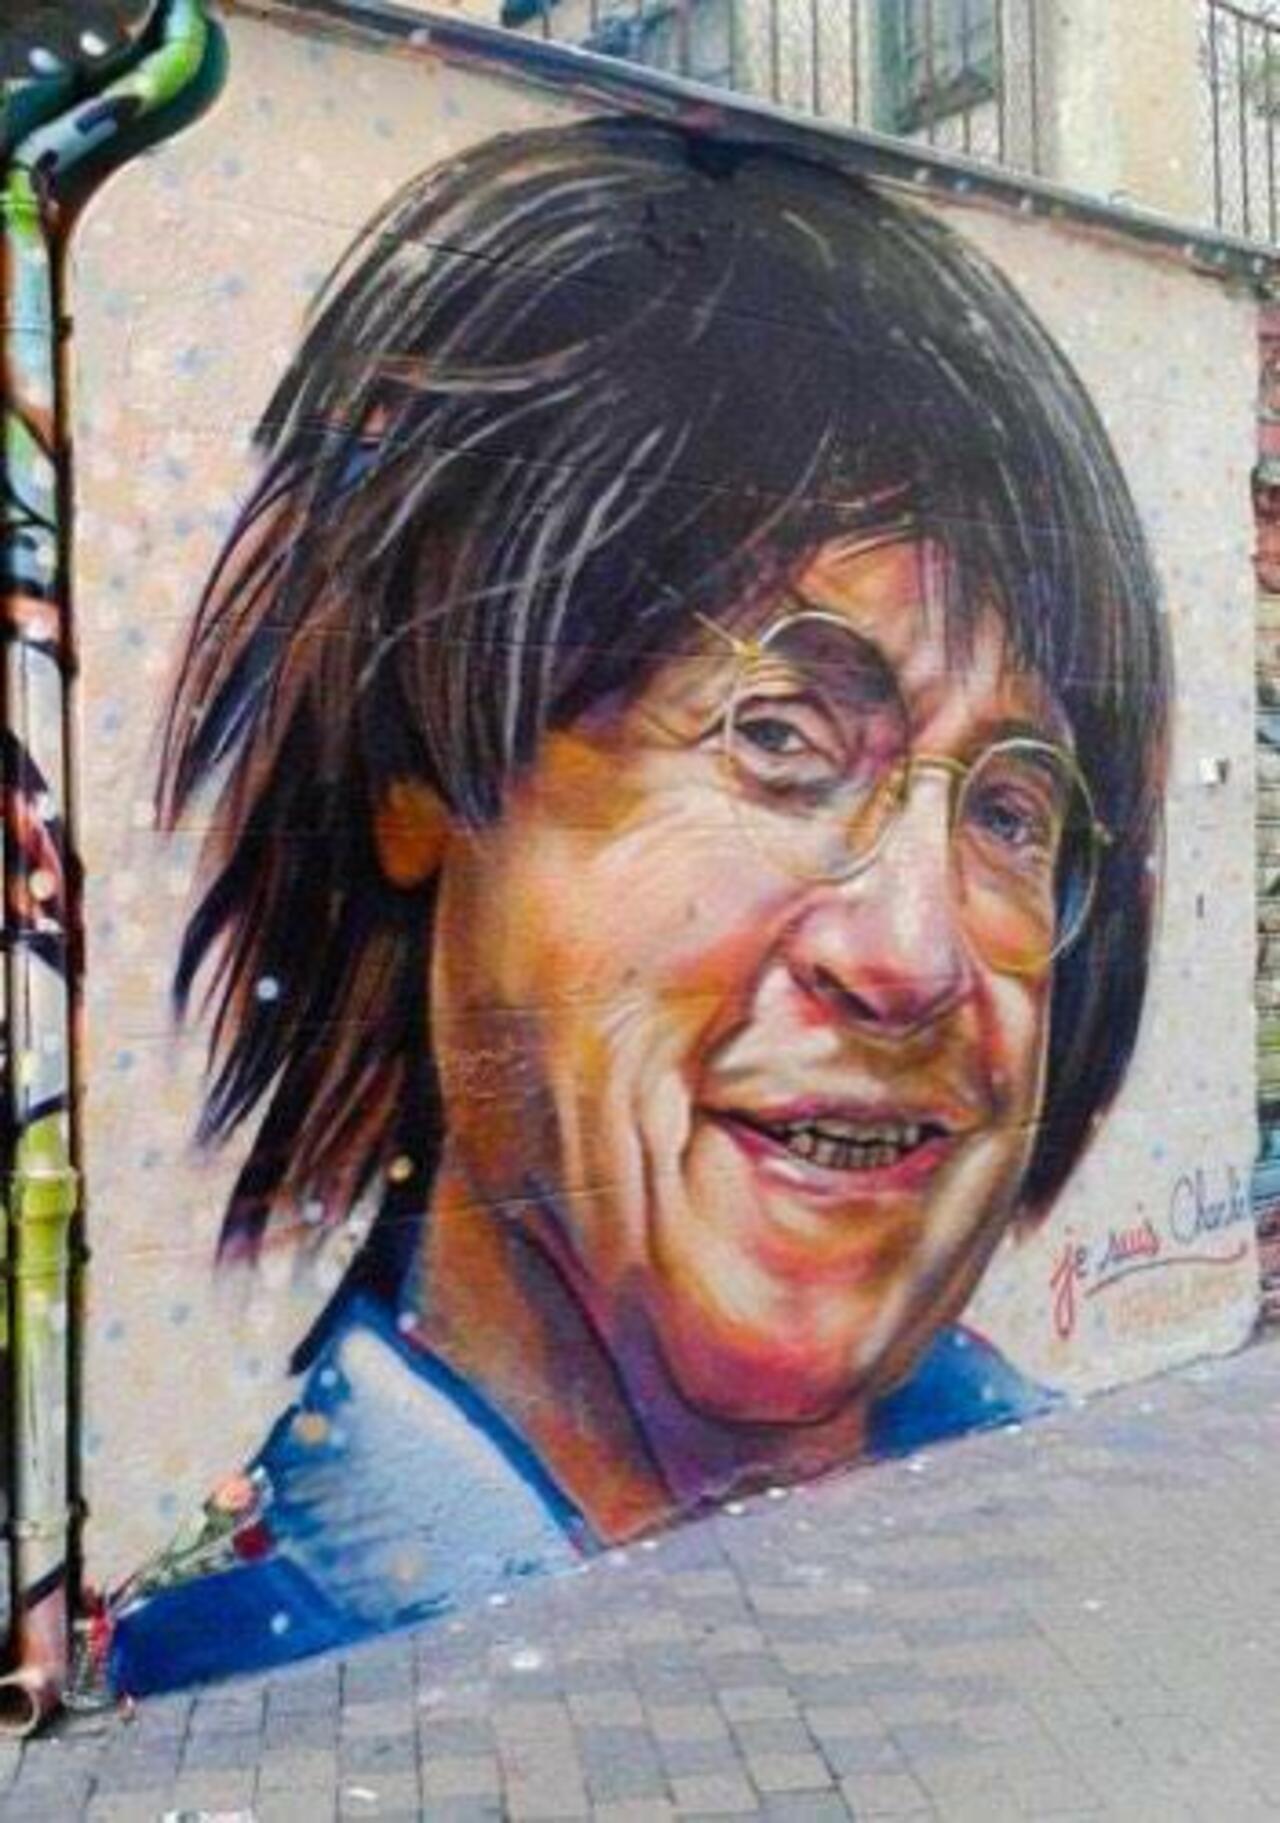 Street Art / "JeSuisCharlie "
#graffiti #art #streetart #mural http://t.co/i2R6rLTYSe